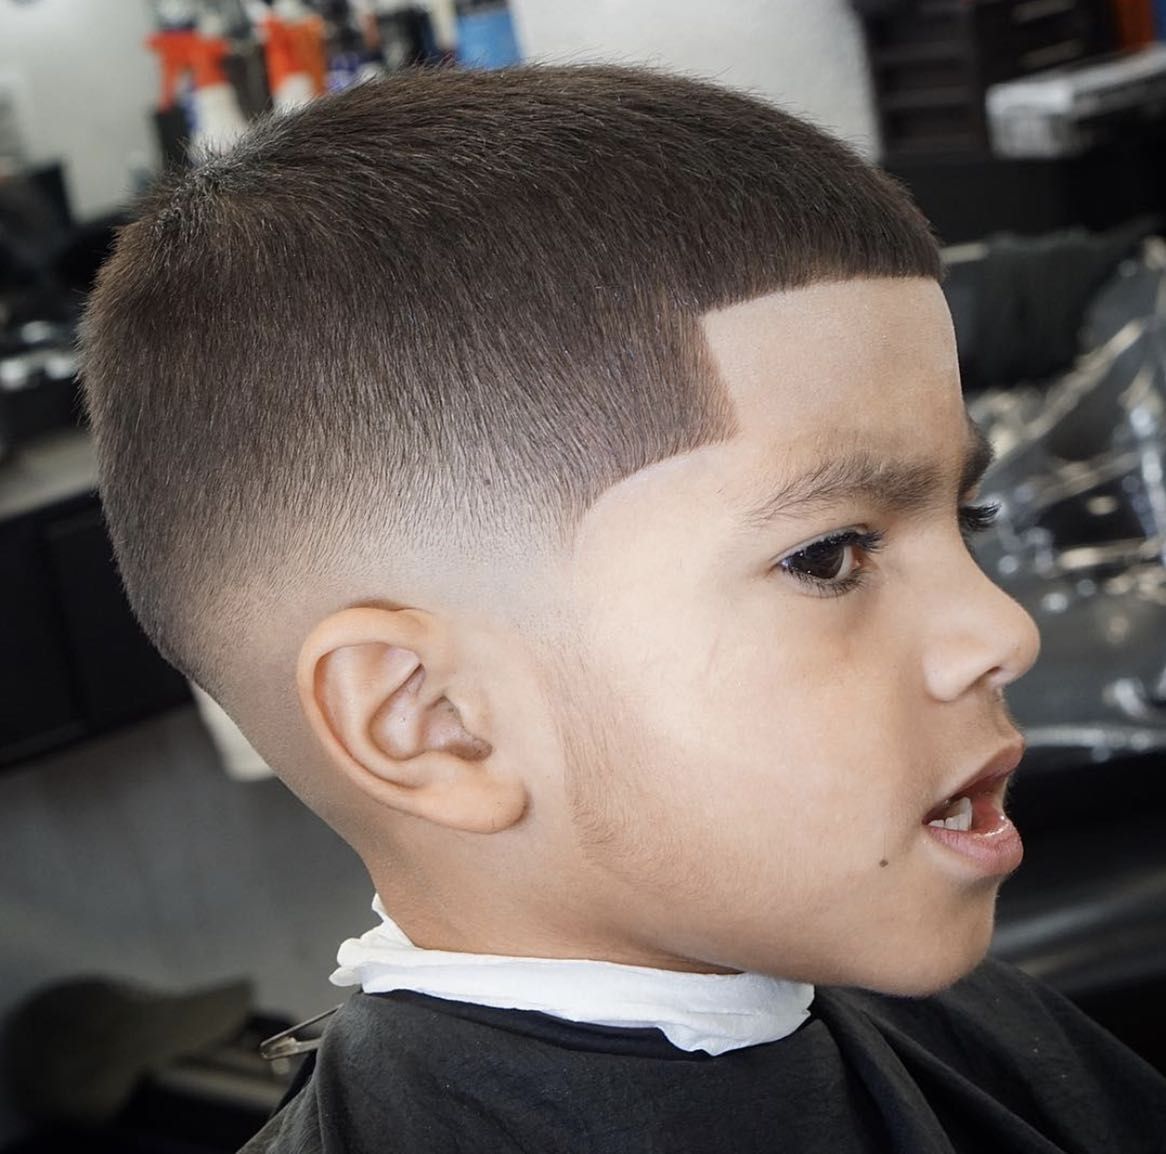 Kids hair cut portfolio